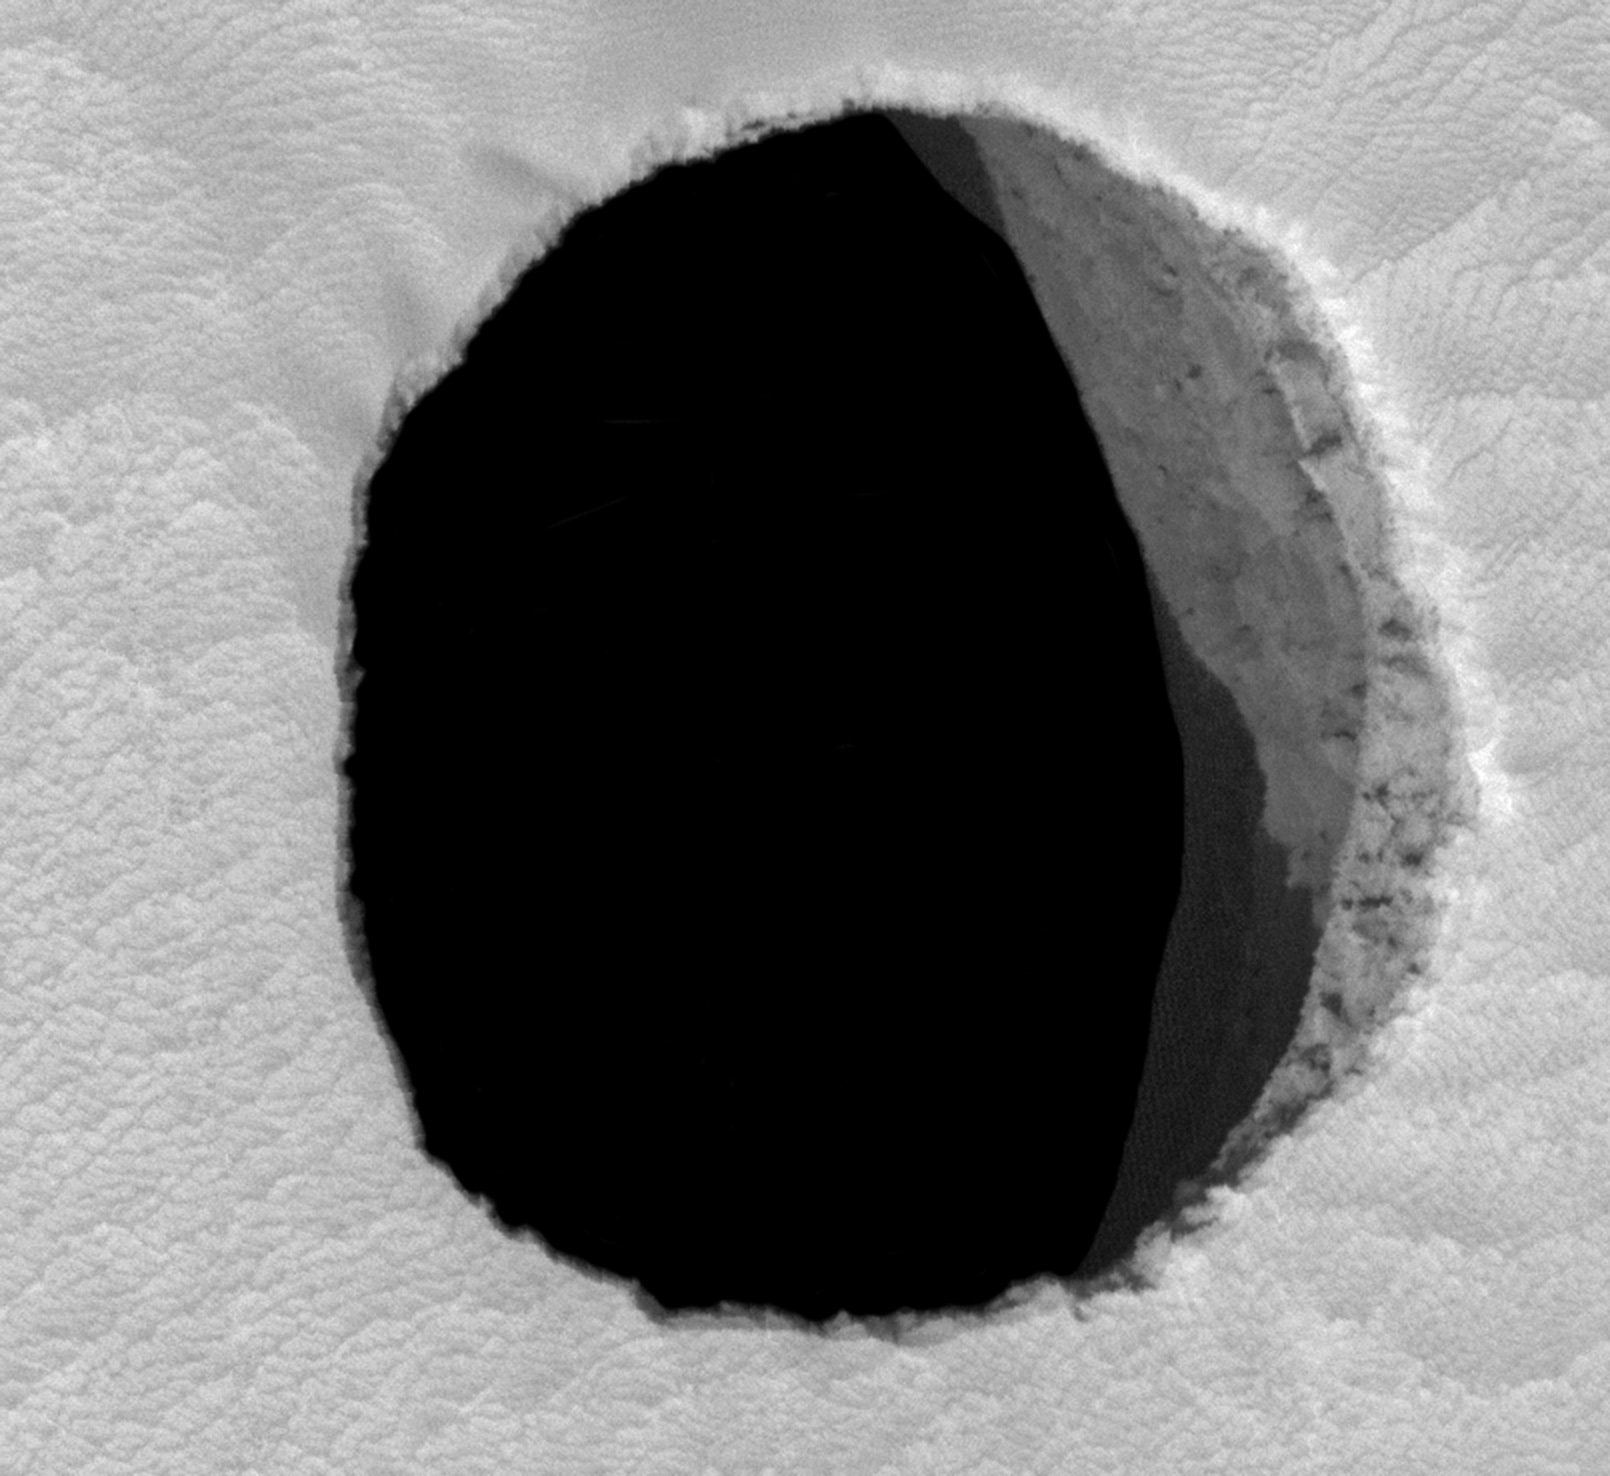 Ученые США обнаружили на Марсе загадочную дыру: возможно, это вход в пещеры, которые послужат колонизации